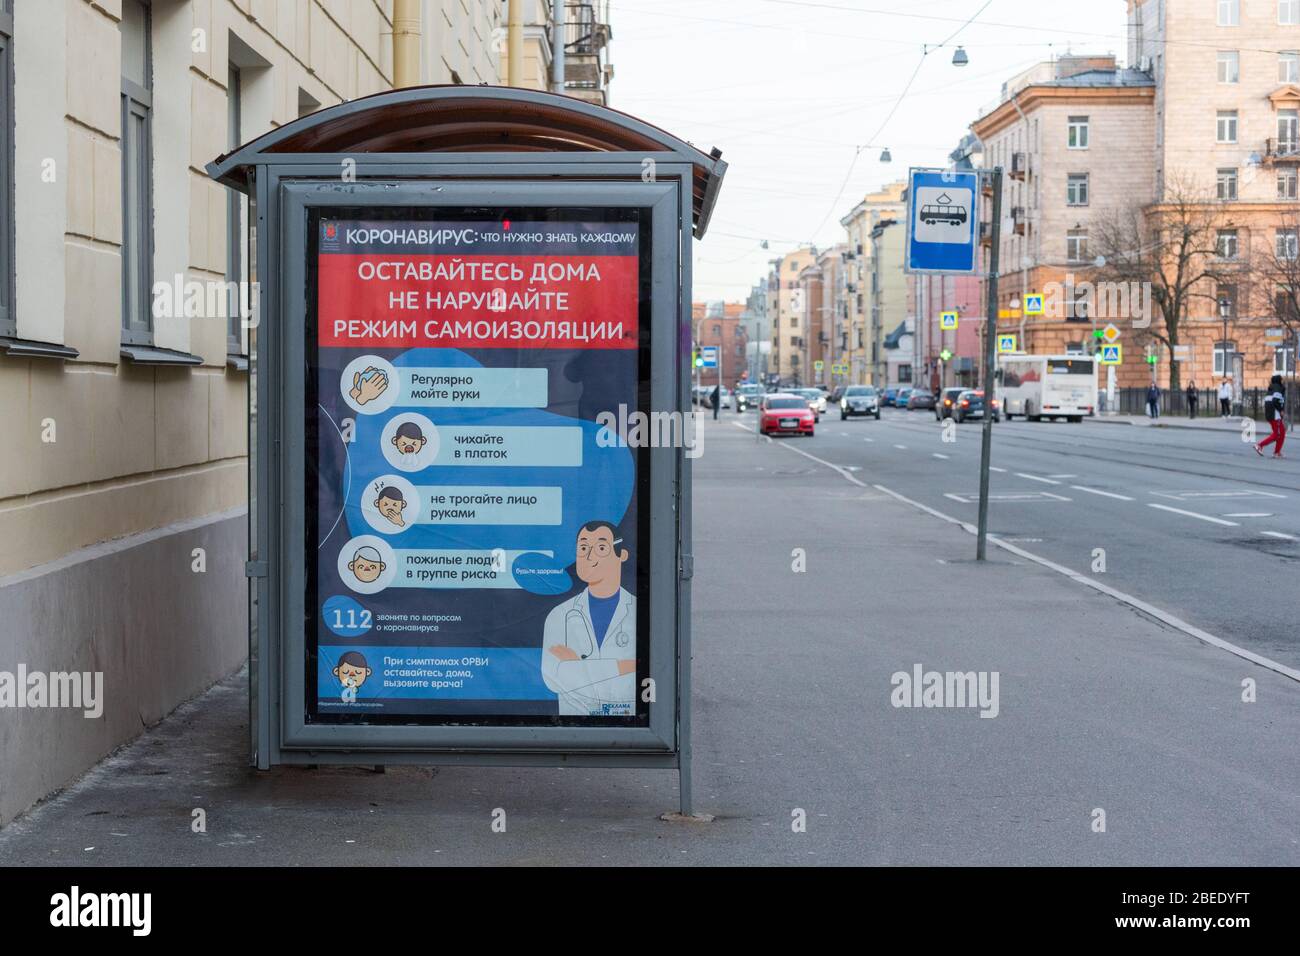 St. Petersburg, Russland - 8. April 2020: Plakat mit dem Titel "Coronavirus, was jeder wissen muss" auf Russisch an einer Bushaltestelle. Stockfoto